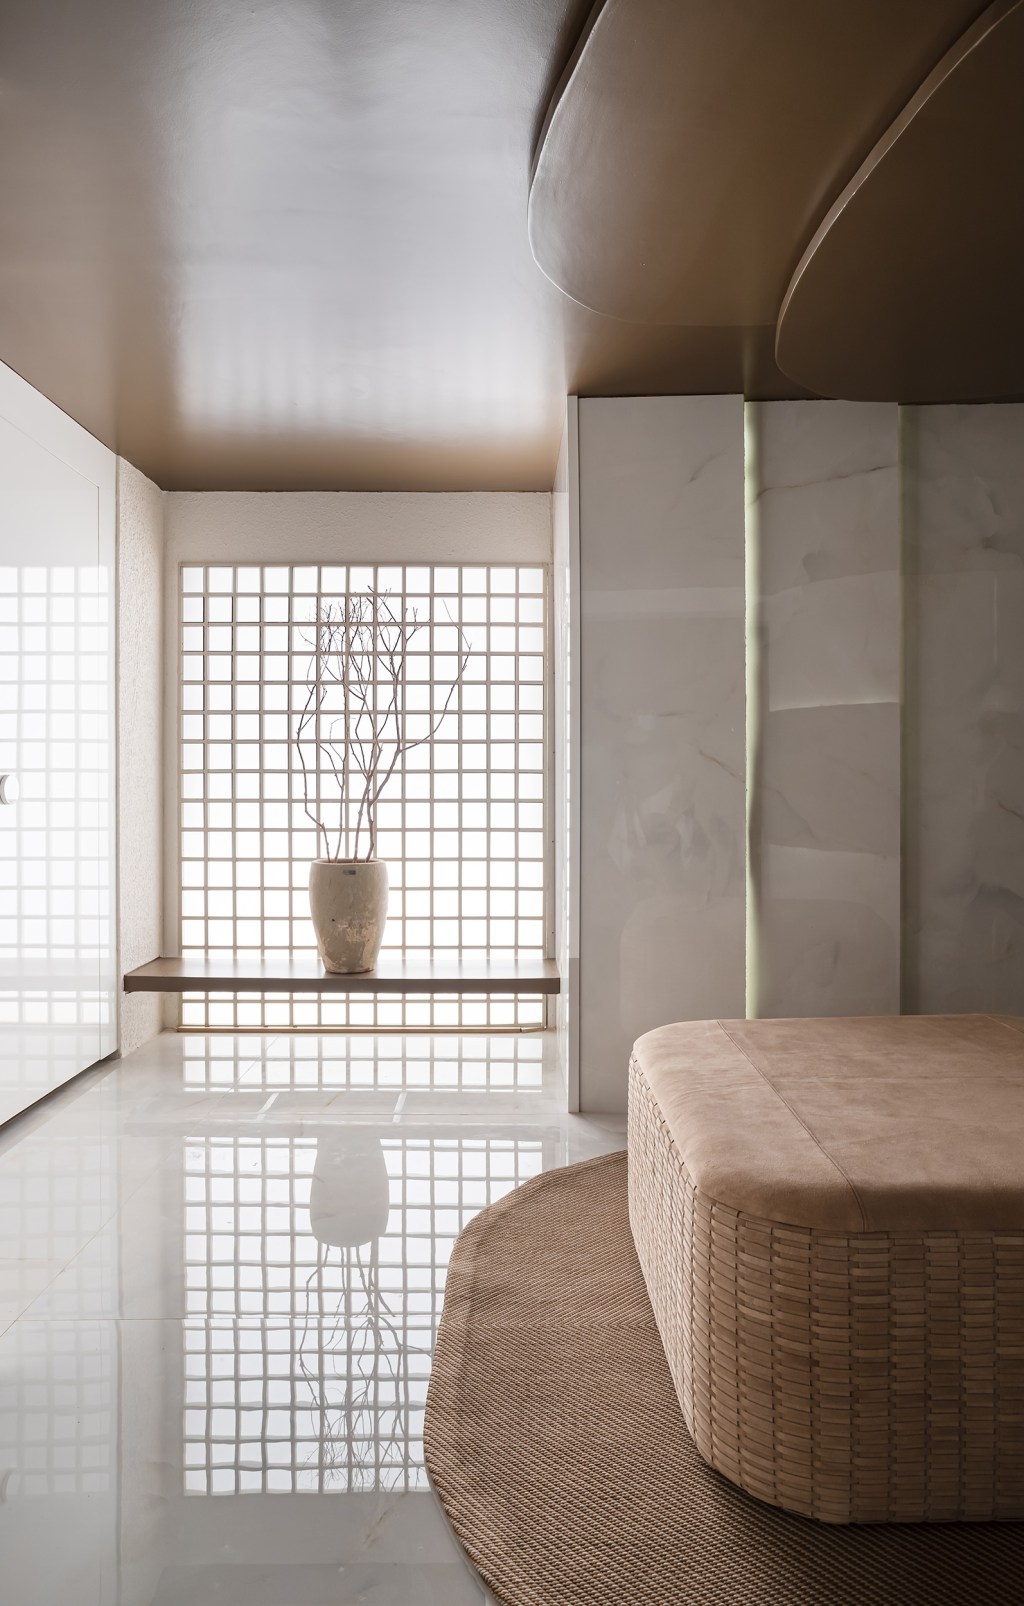 vilaville arquitetura banho zahir banheiro casacor sp sao paulo 2022 banheiro sofa vaso